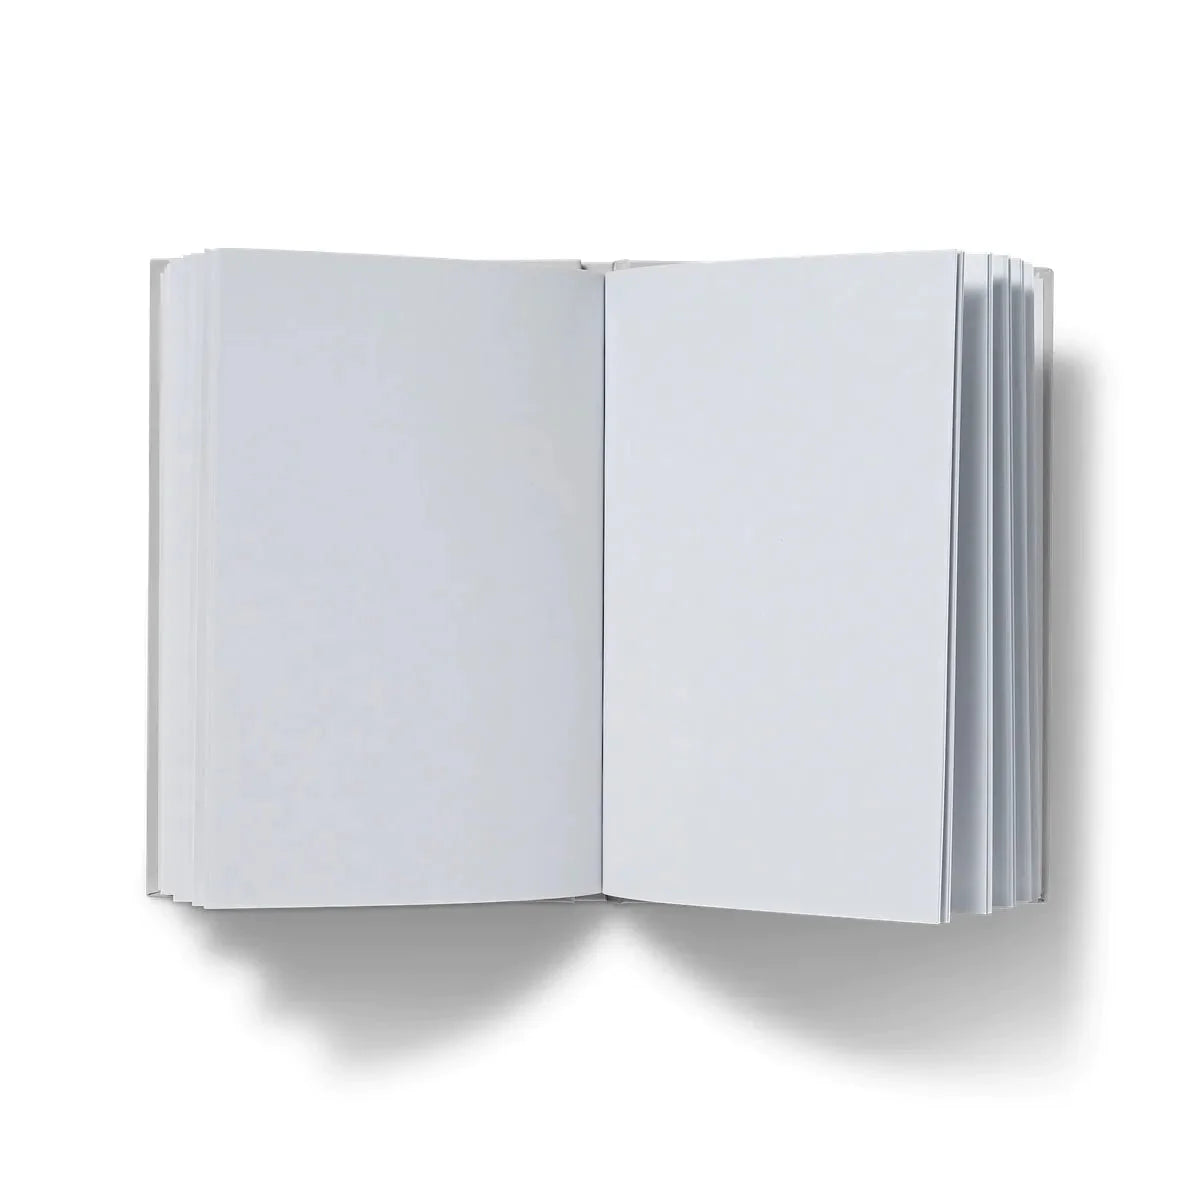 Gold Rush Hardback Journal - Notebooks & Notepads - Aesthetic Art